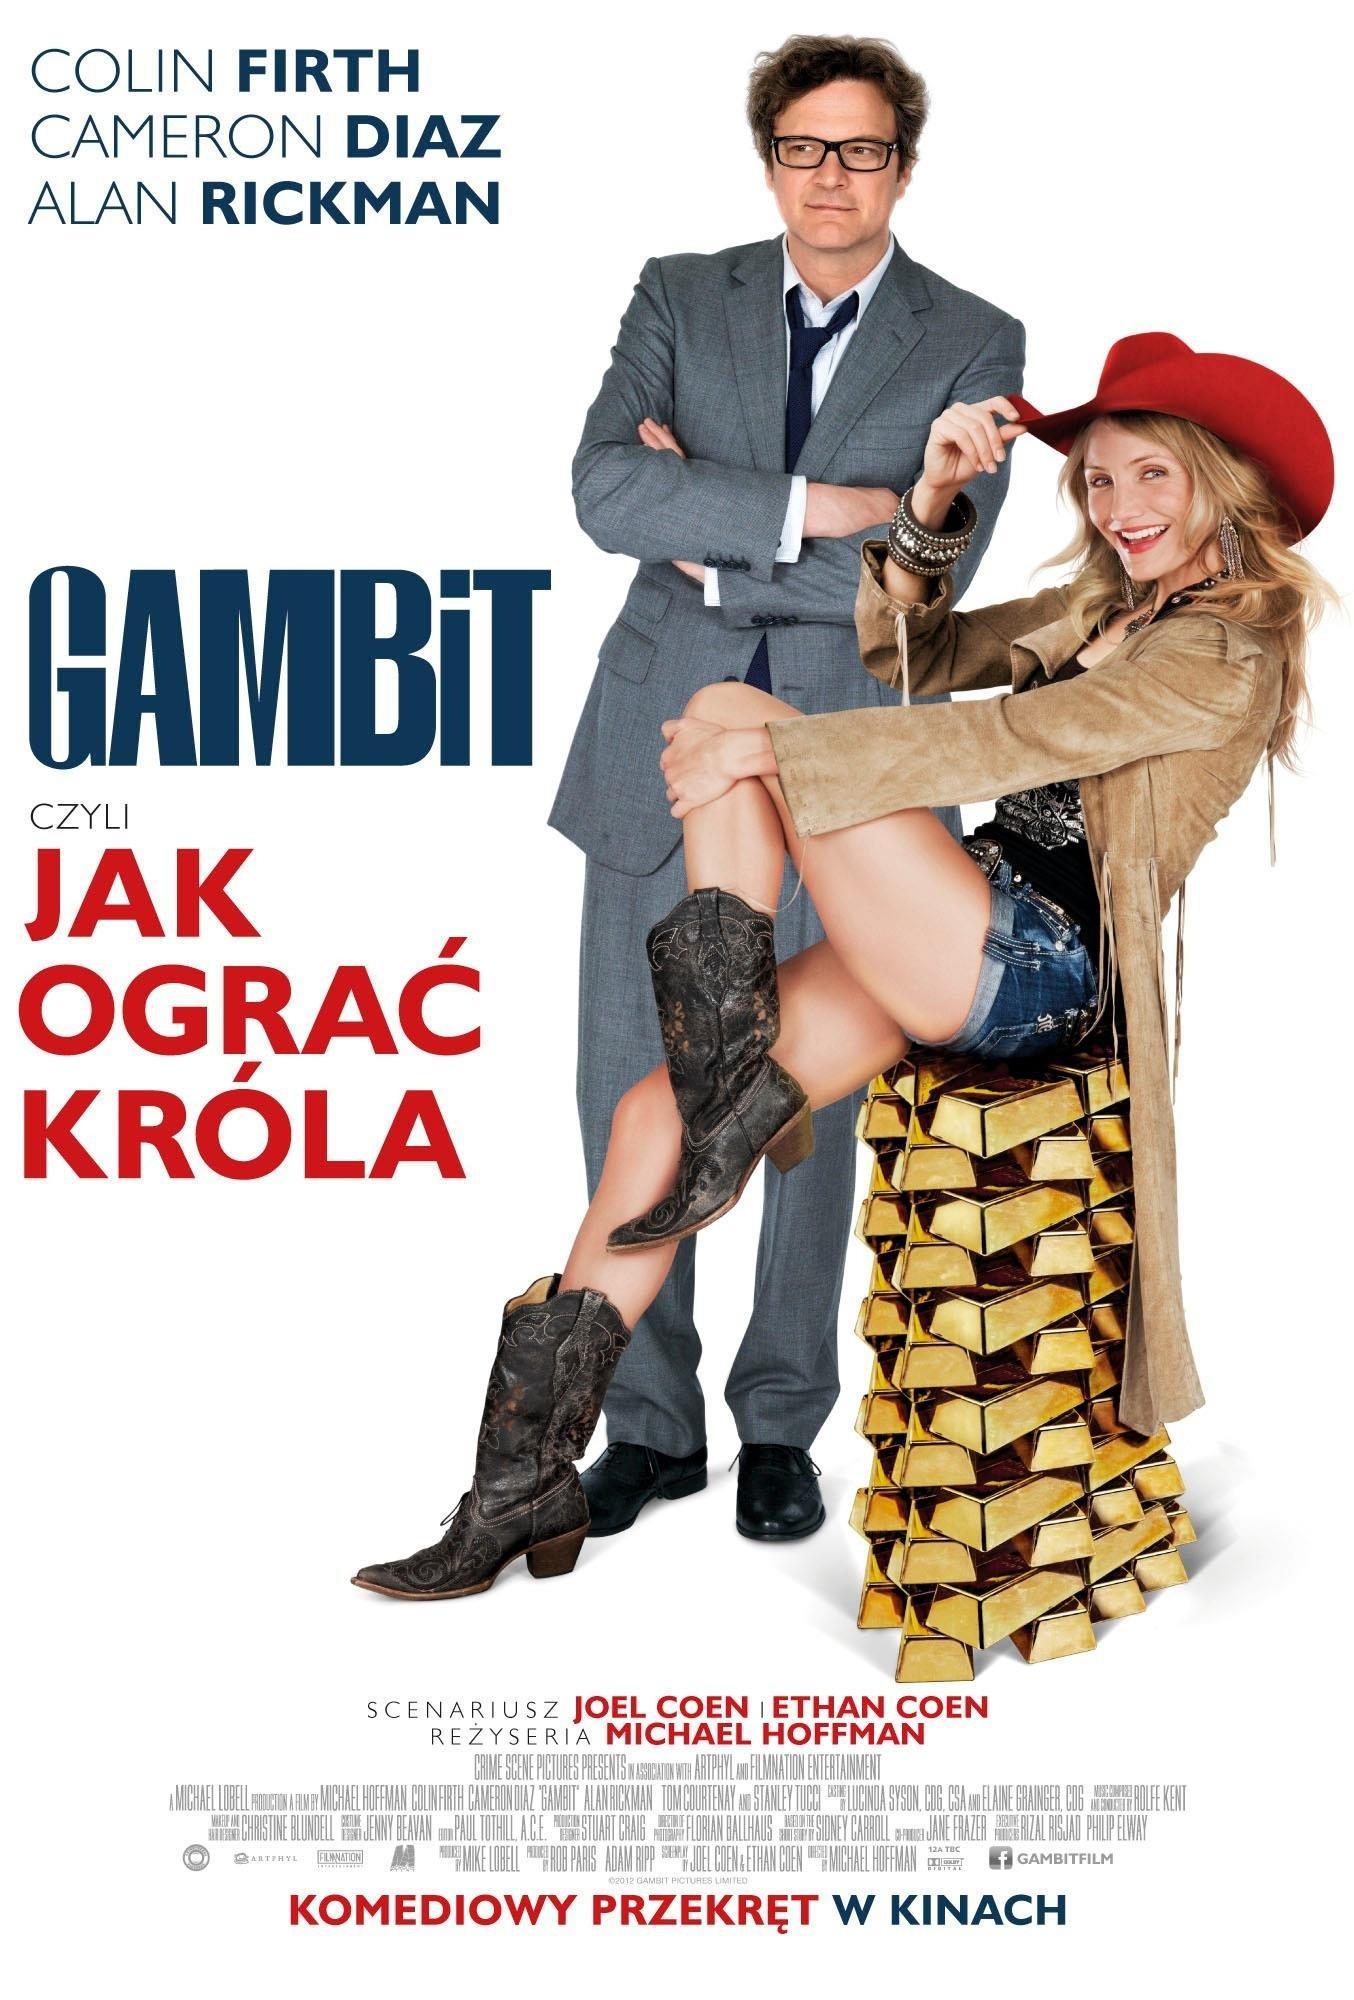 Постер фильма Гамбит | Gambit